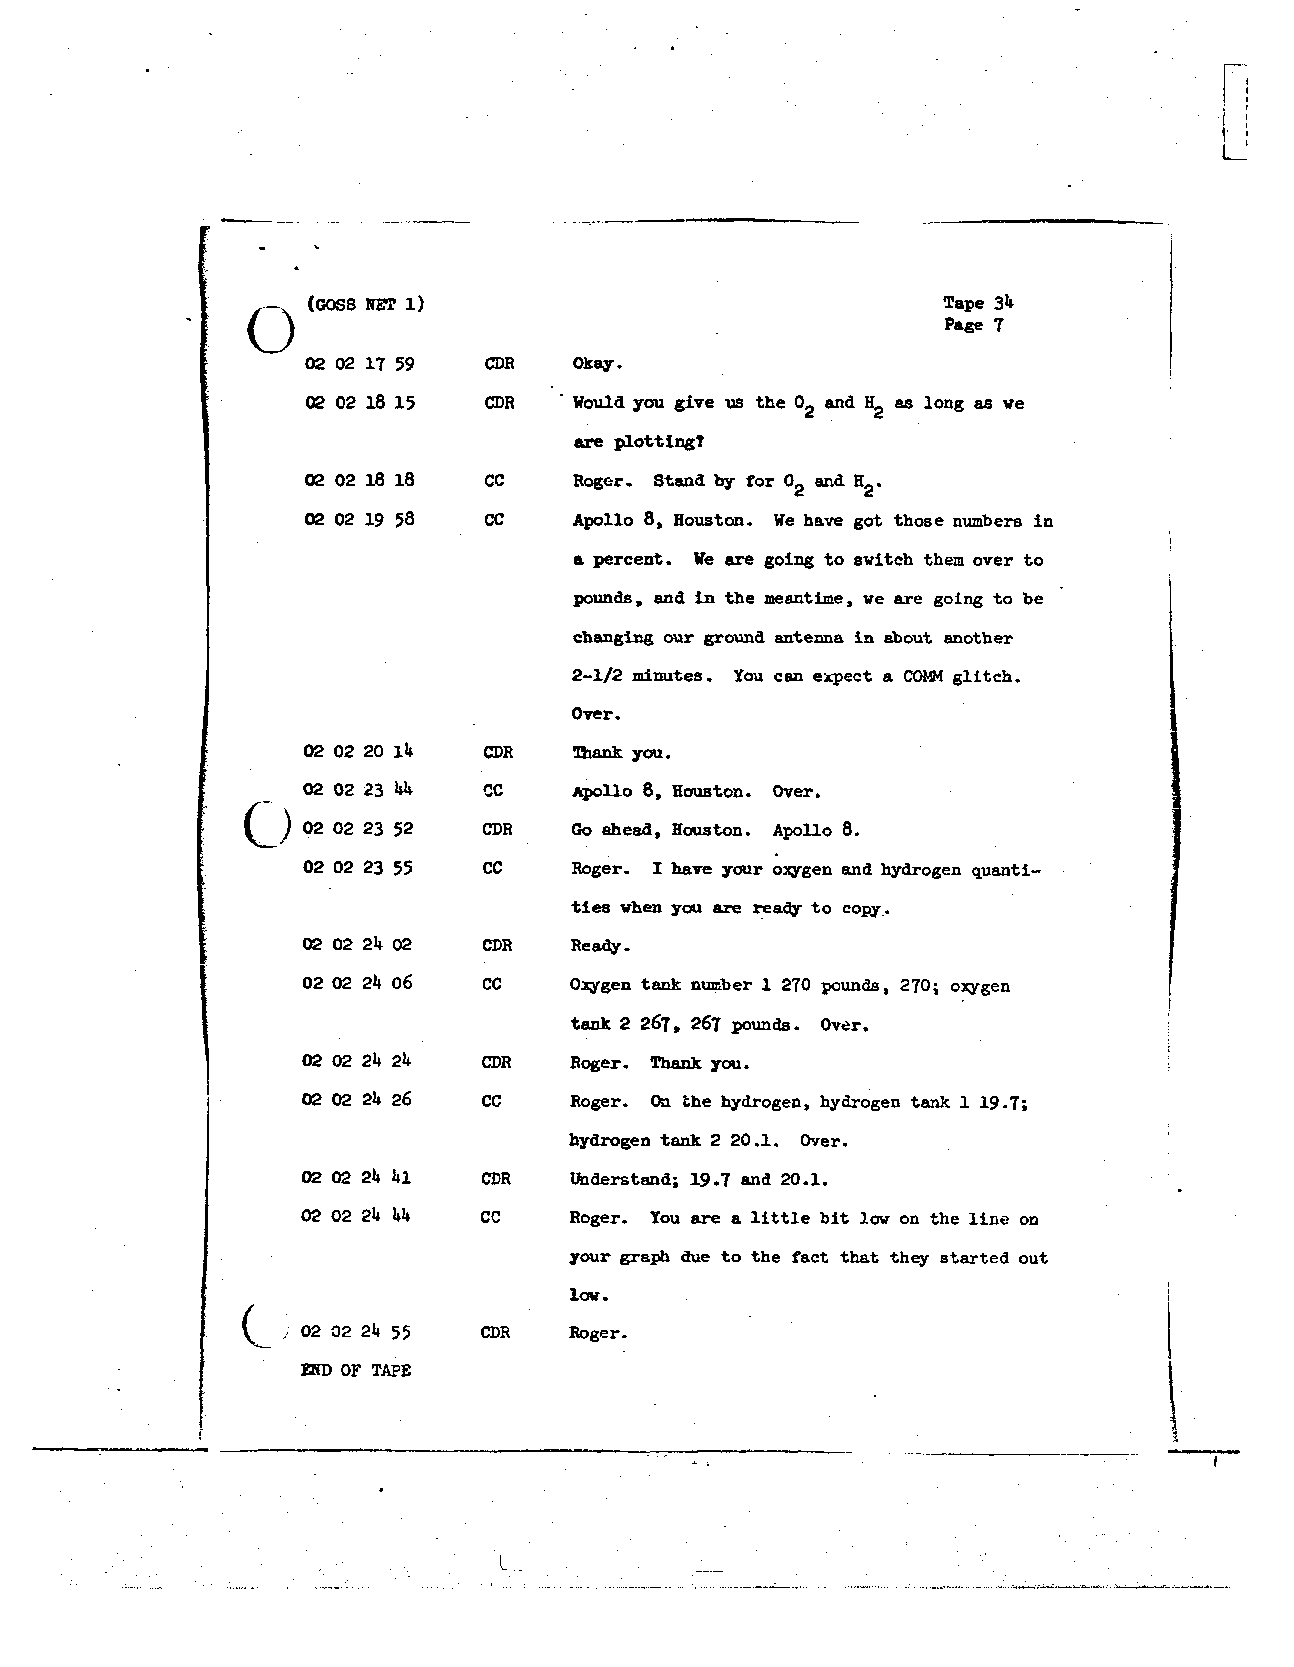 Page 263 of Apollo 8’s original transcript